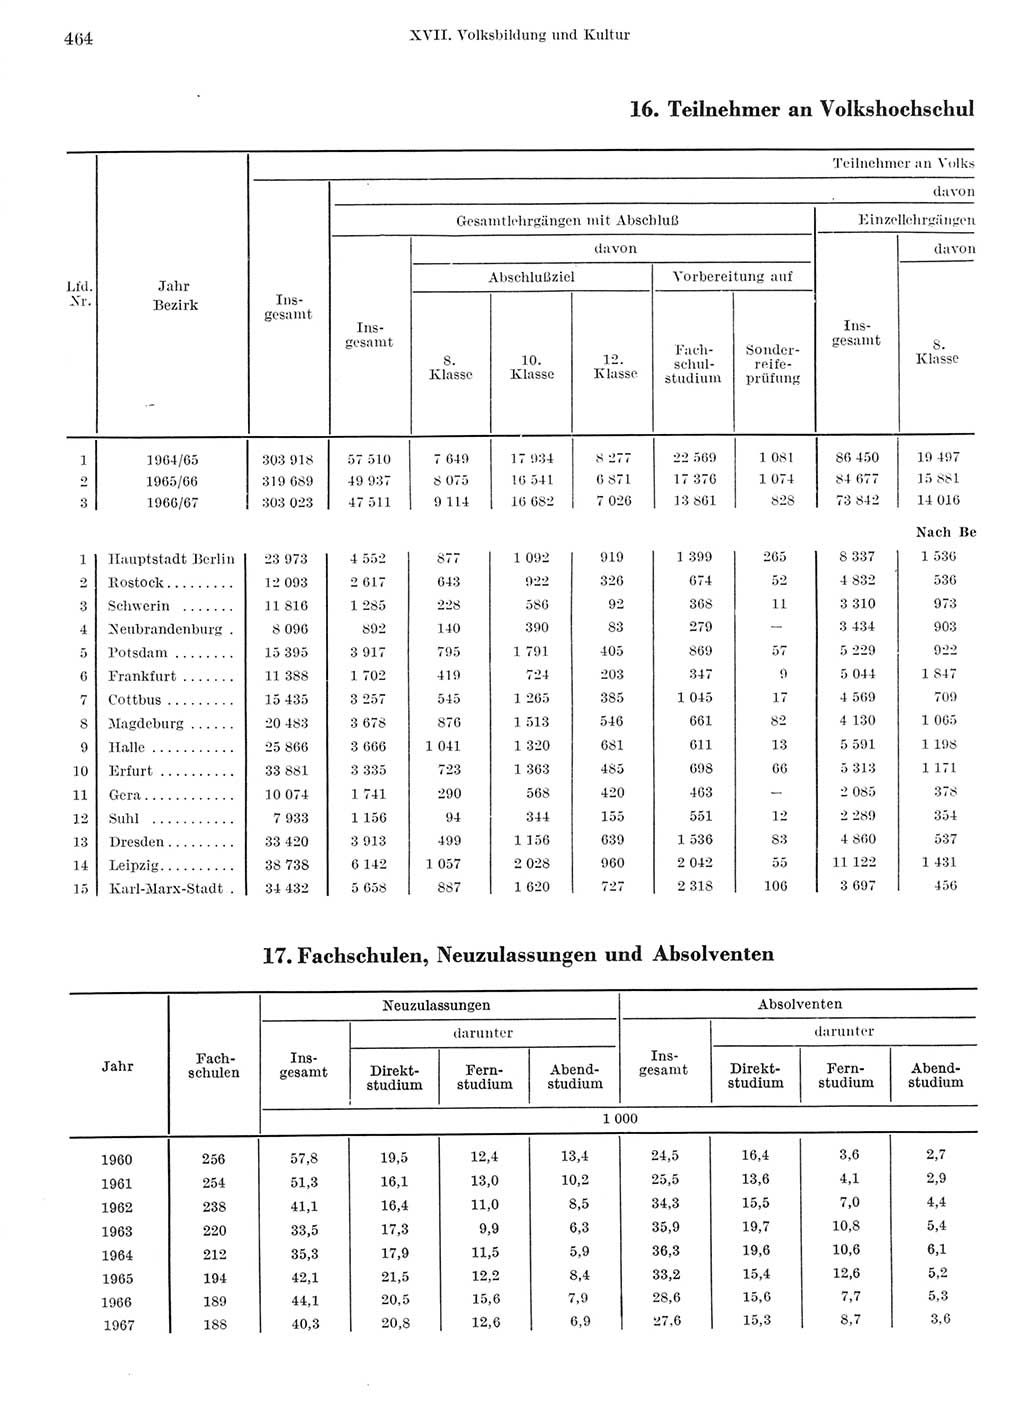 Statistisches Jahrbuch der Deutschen Demokratischen Republik (DDR) 1968, Seite 464 (Stat. Jb. DDR 1968, S. 464)